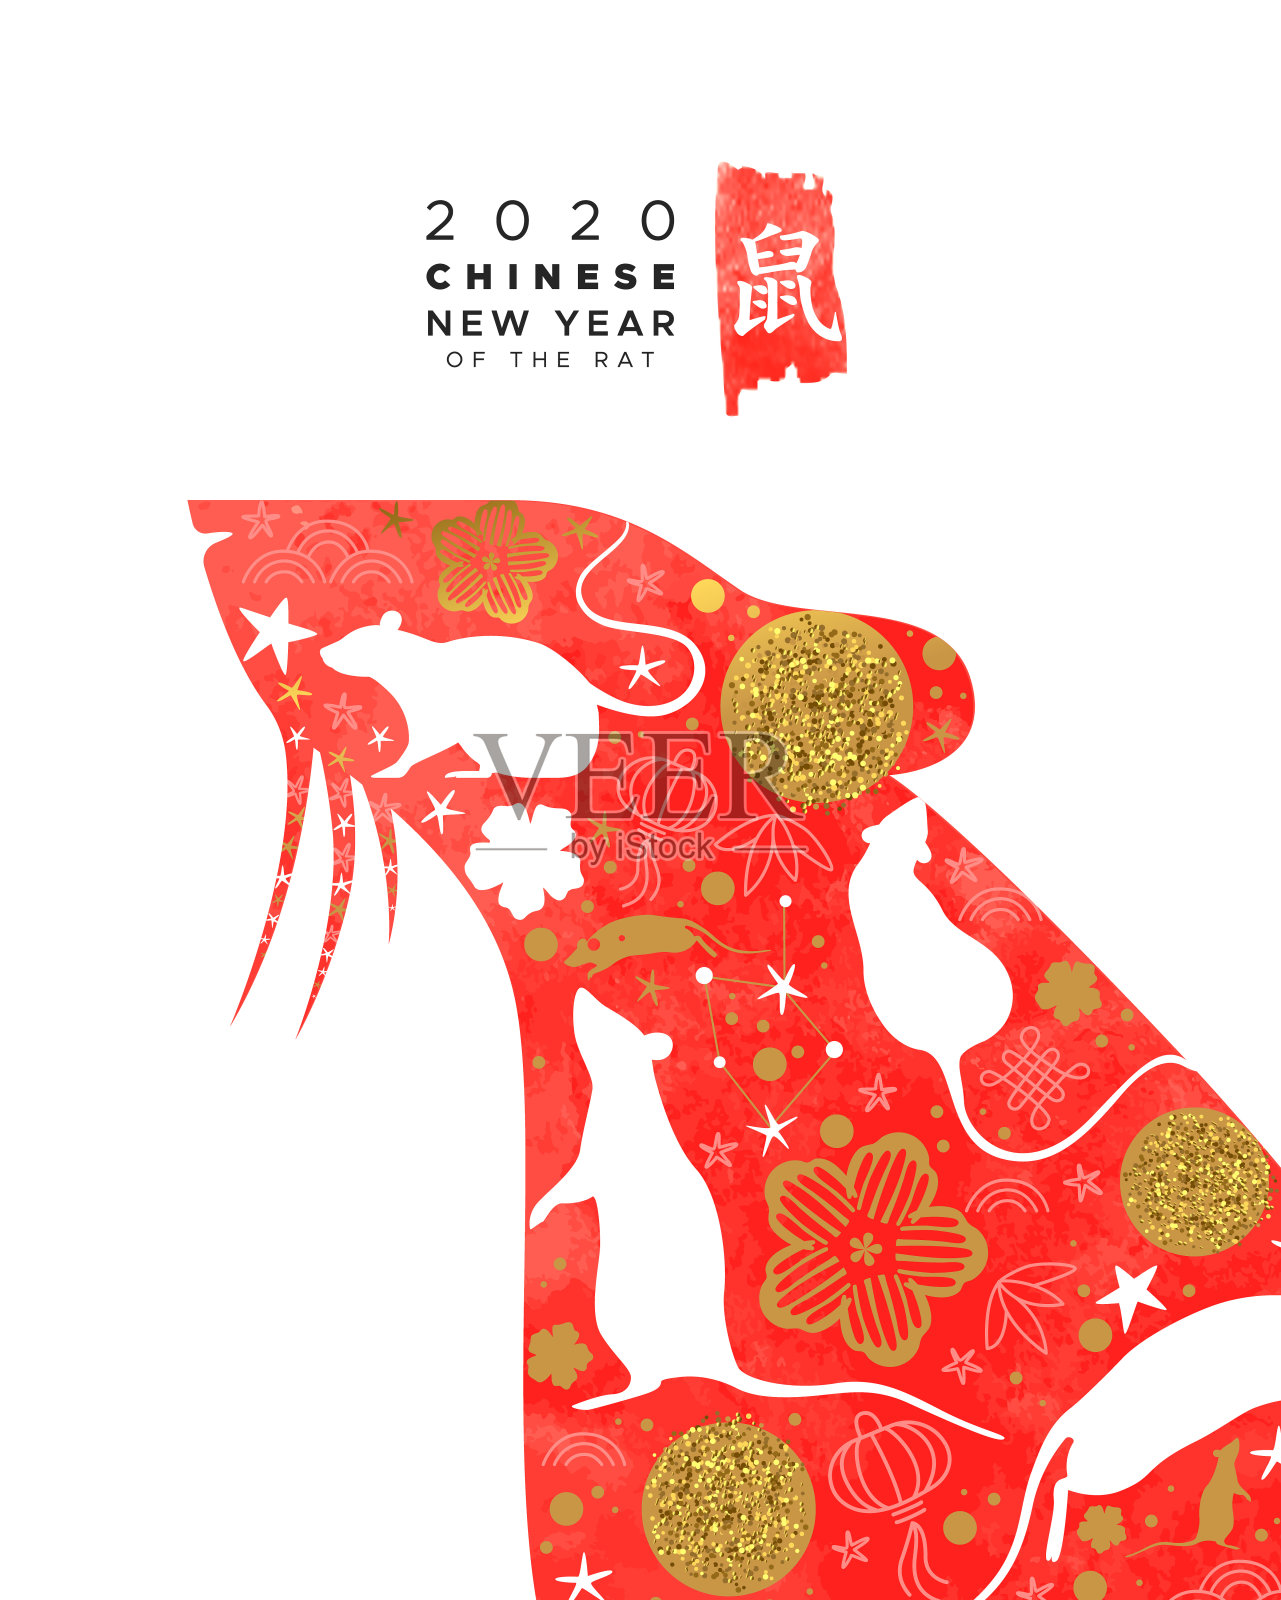 中国新年2020红水彩鼠旗设计元素图片